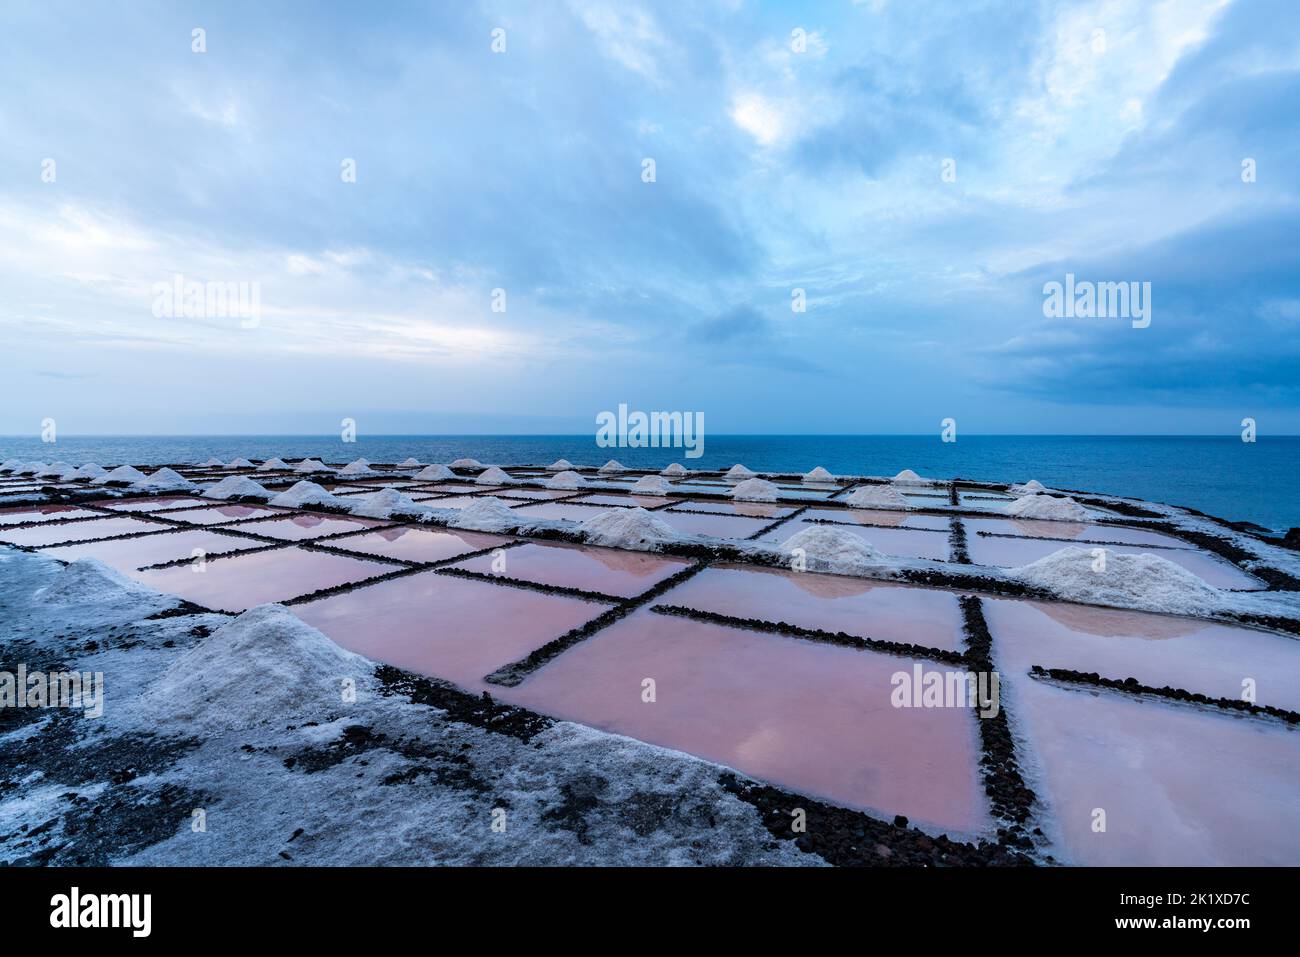 Salt fields near the ocean in La Palma Stock Photo